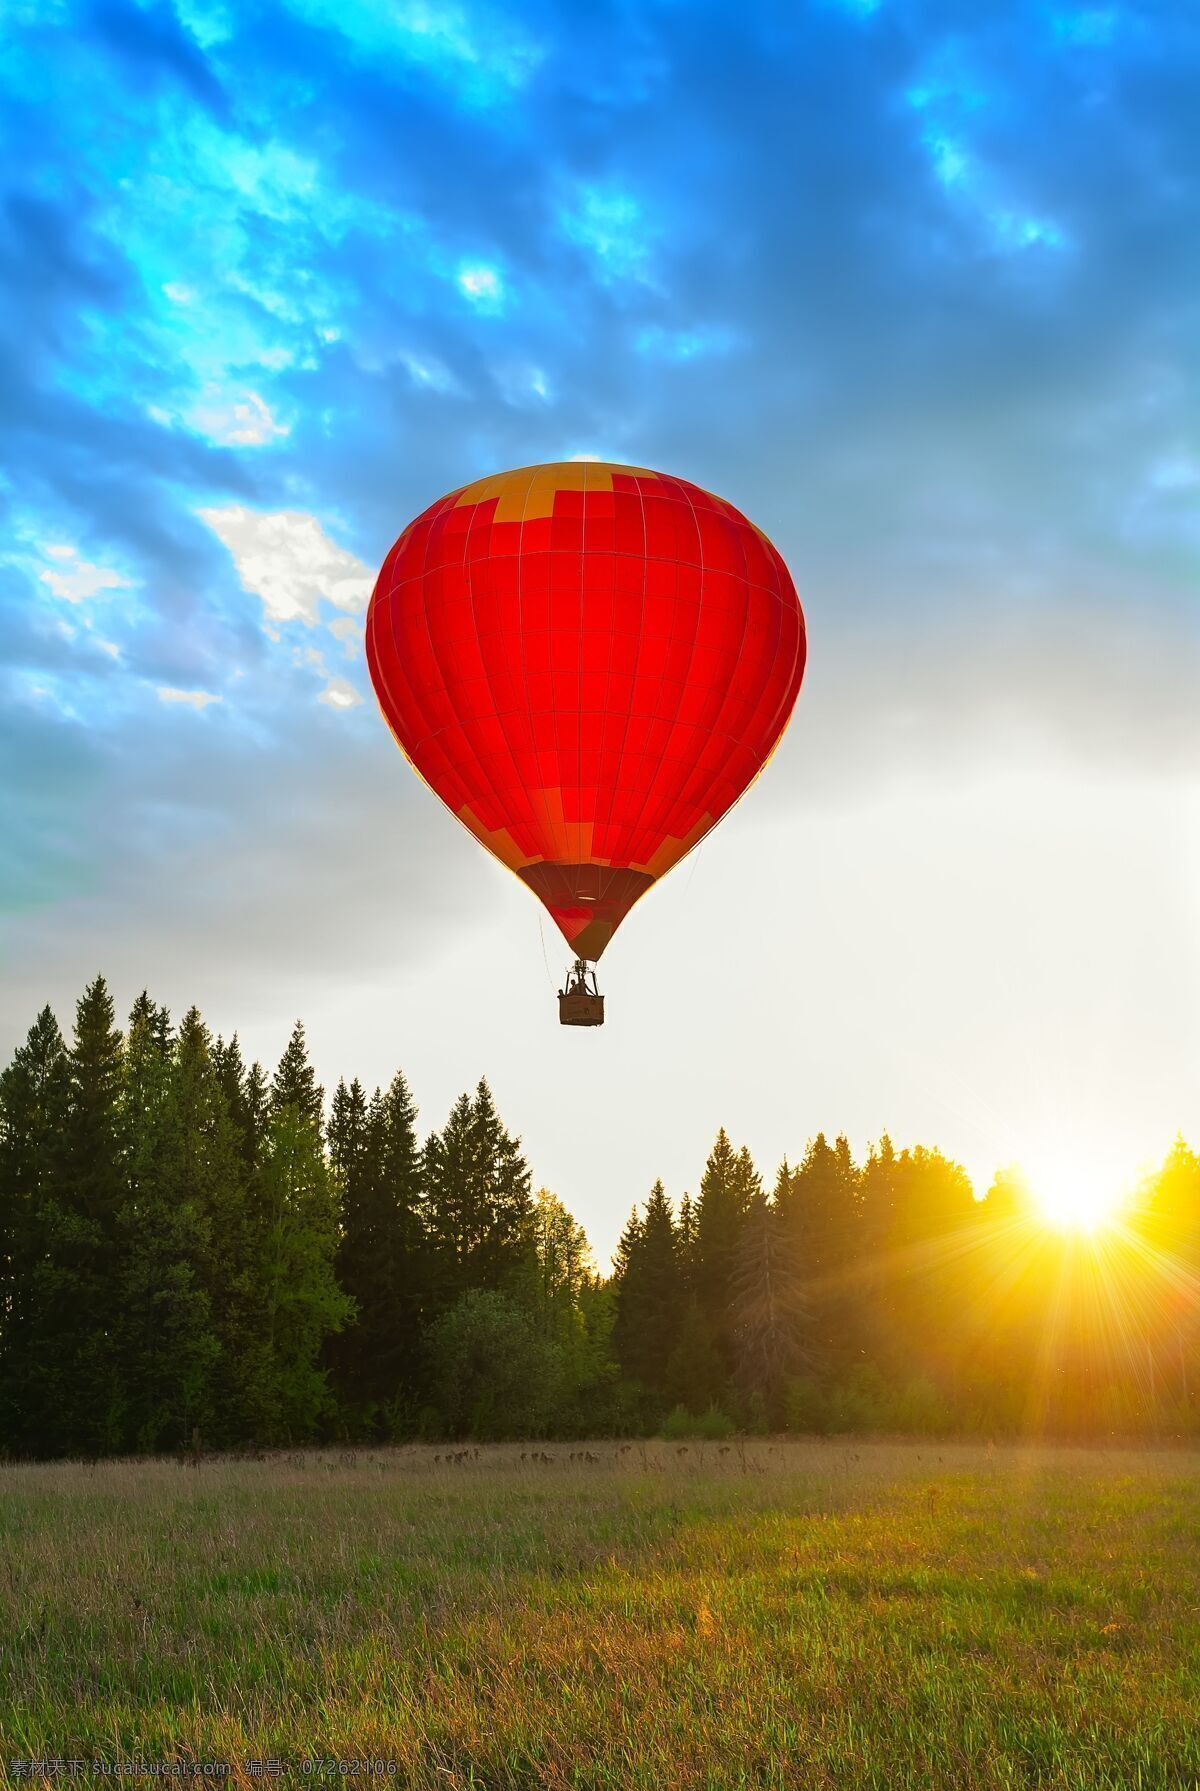 日落 阳光 热气球 田园 树木 空中热气球 天空 旅行 轻气球 自然风景 其他类别 生活百科 白色